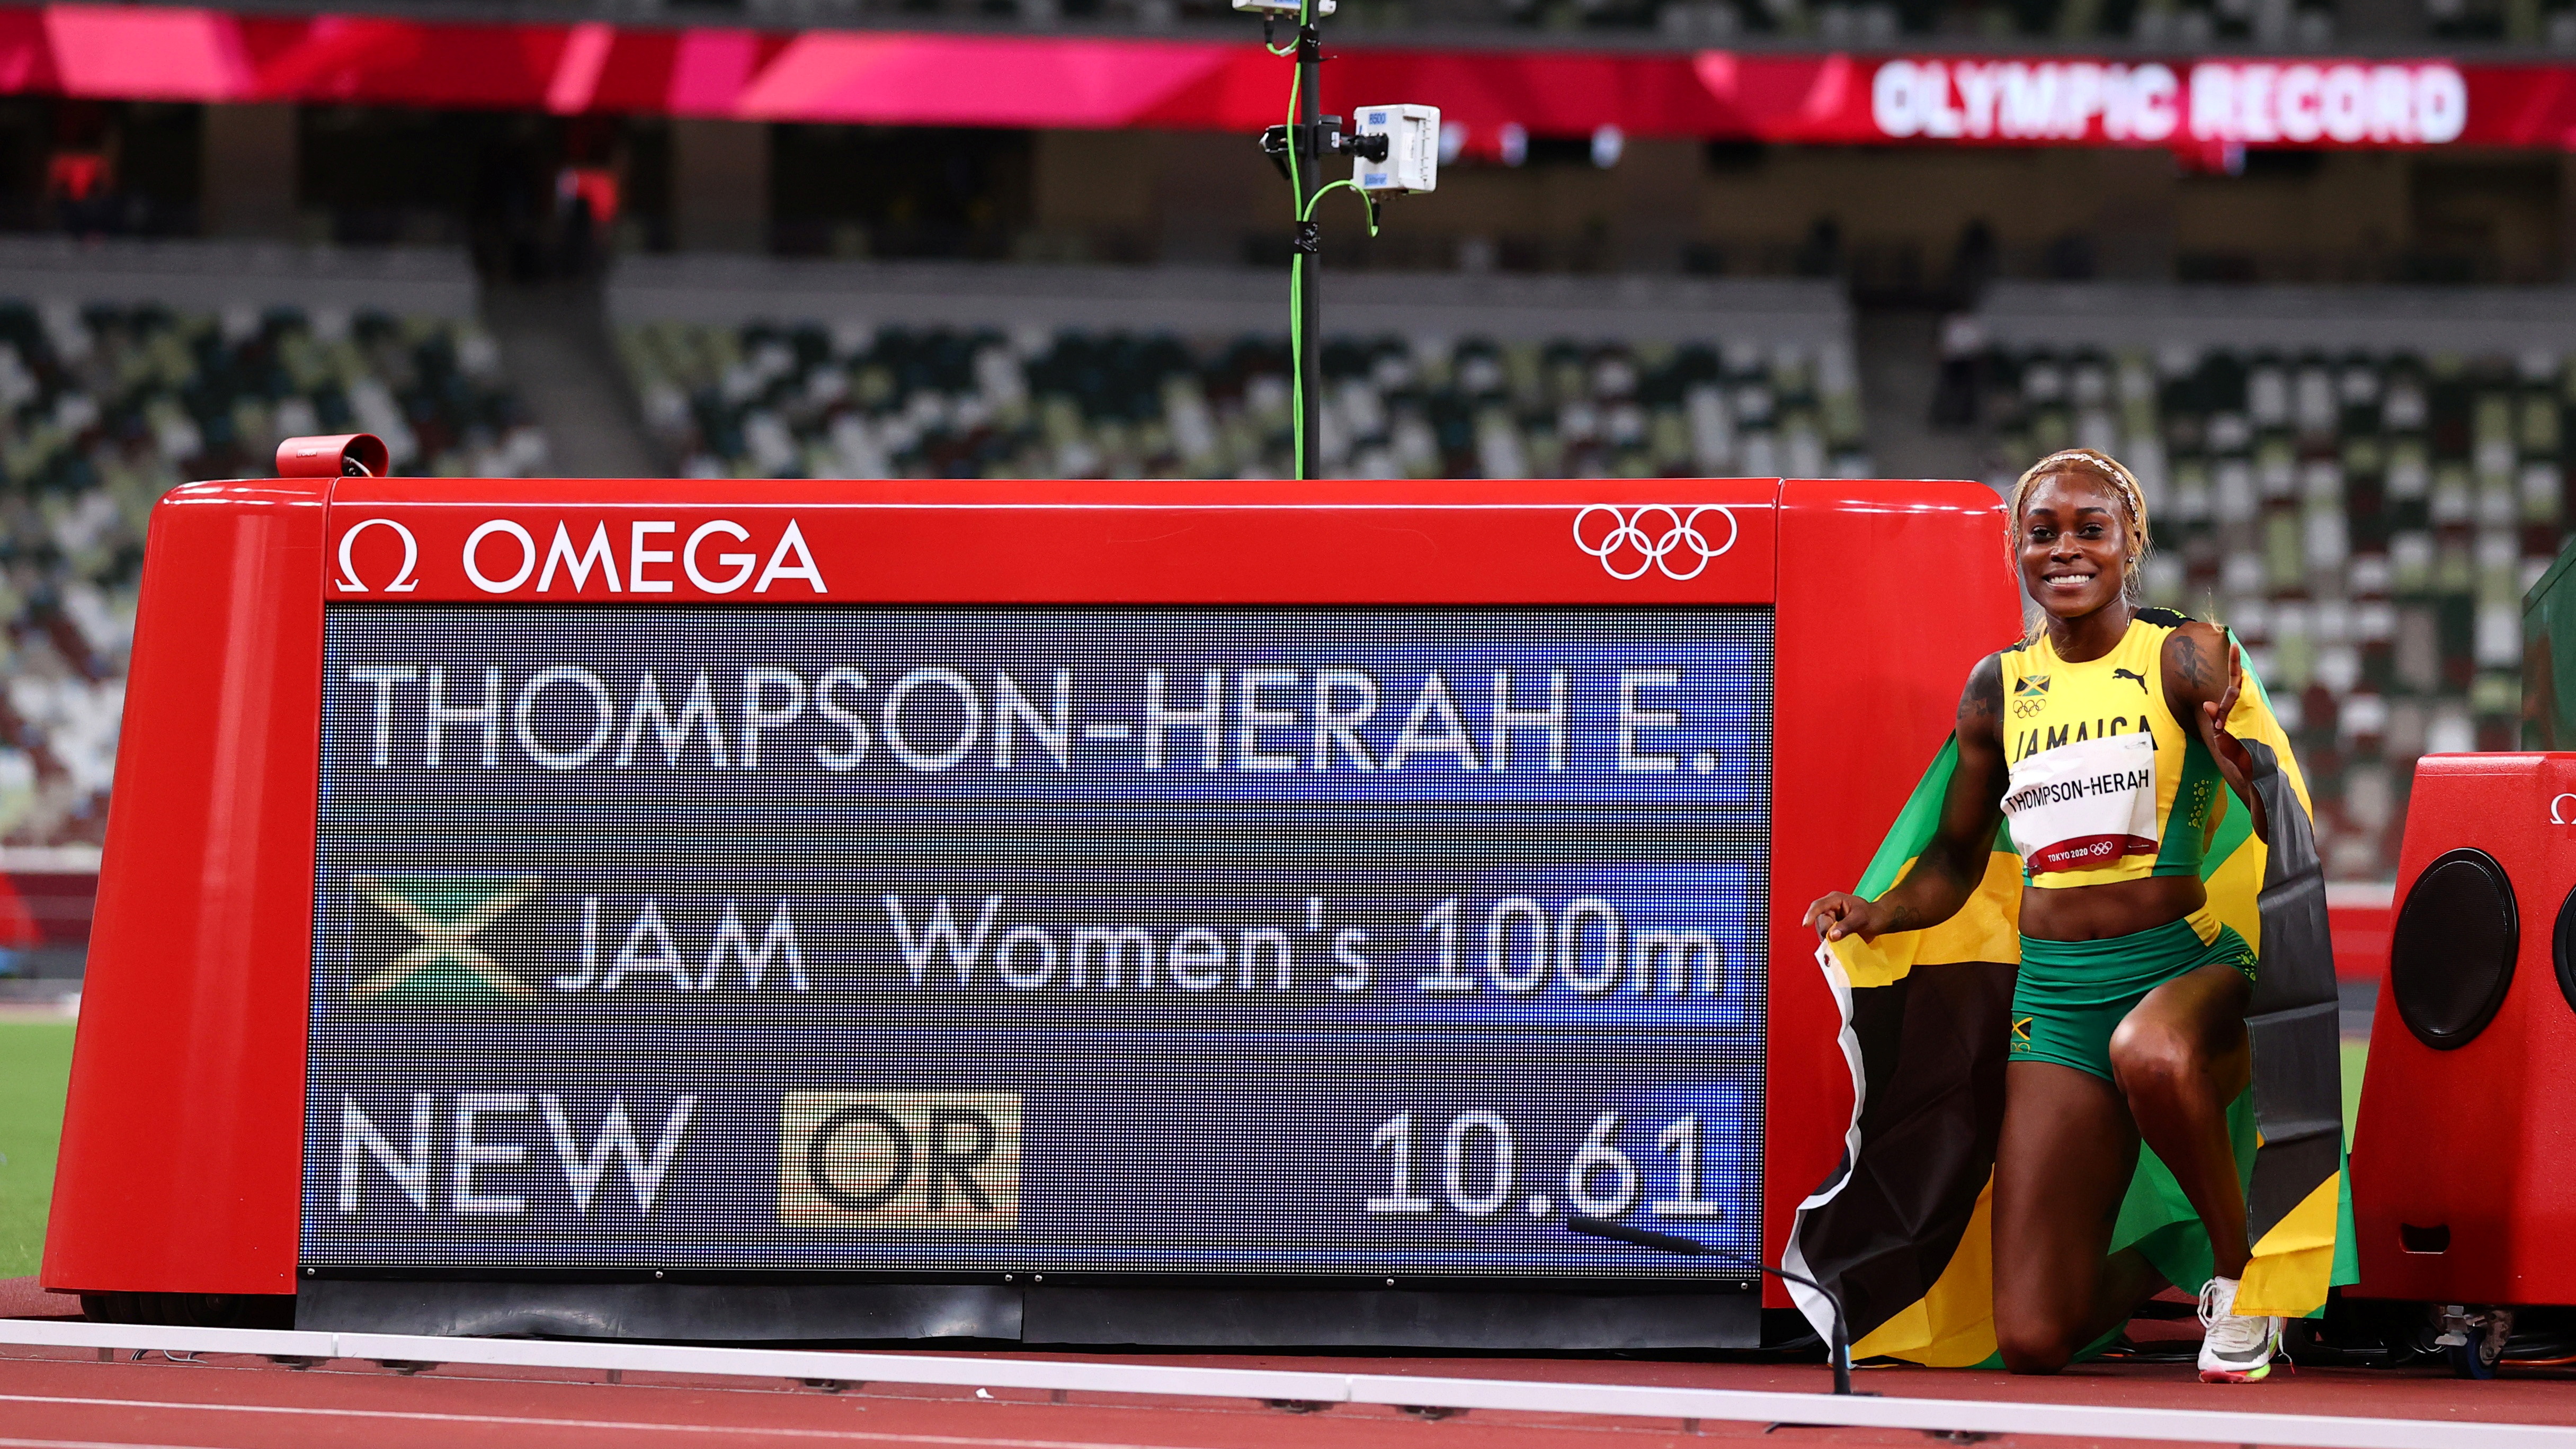 Histórico: Elaine Thompson ganó el oro en los 100 metros de los Juegos de Tokio y rompió el récord olímpico luego de 33 años